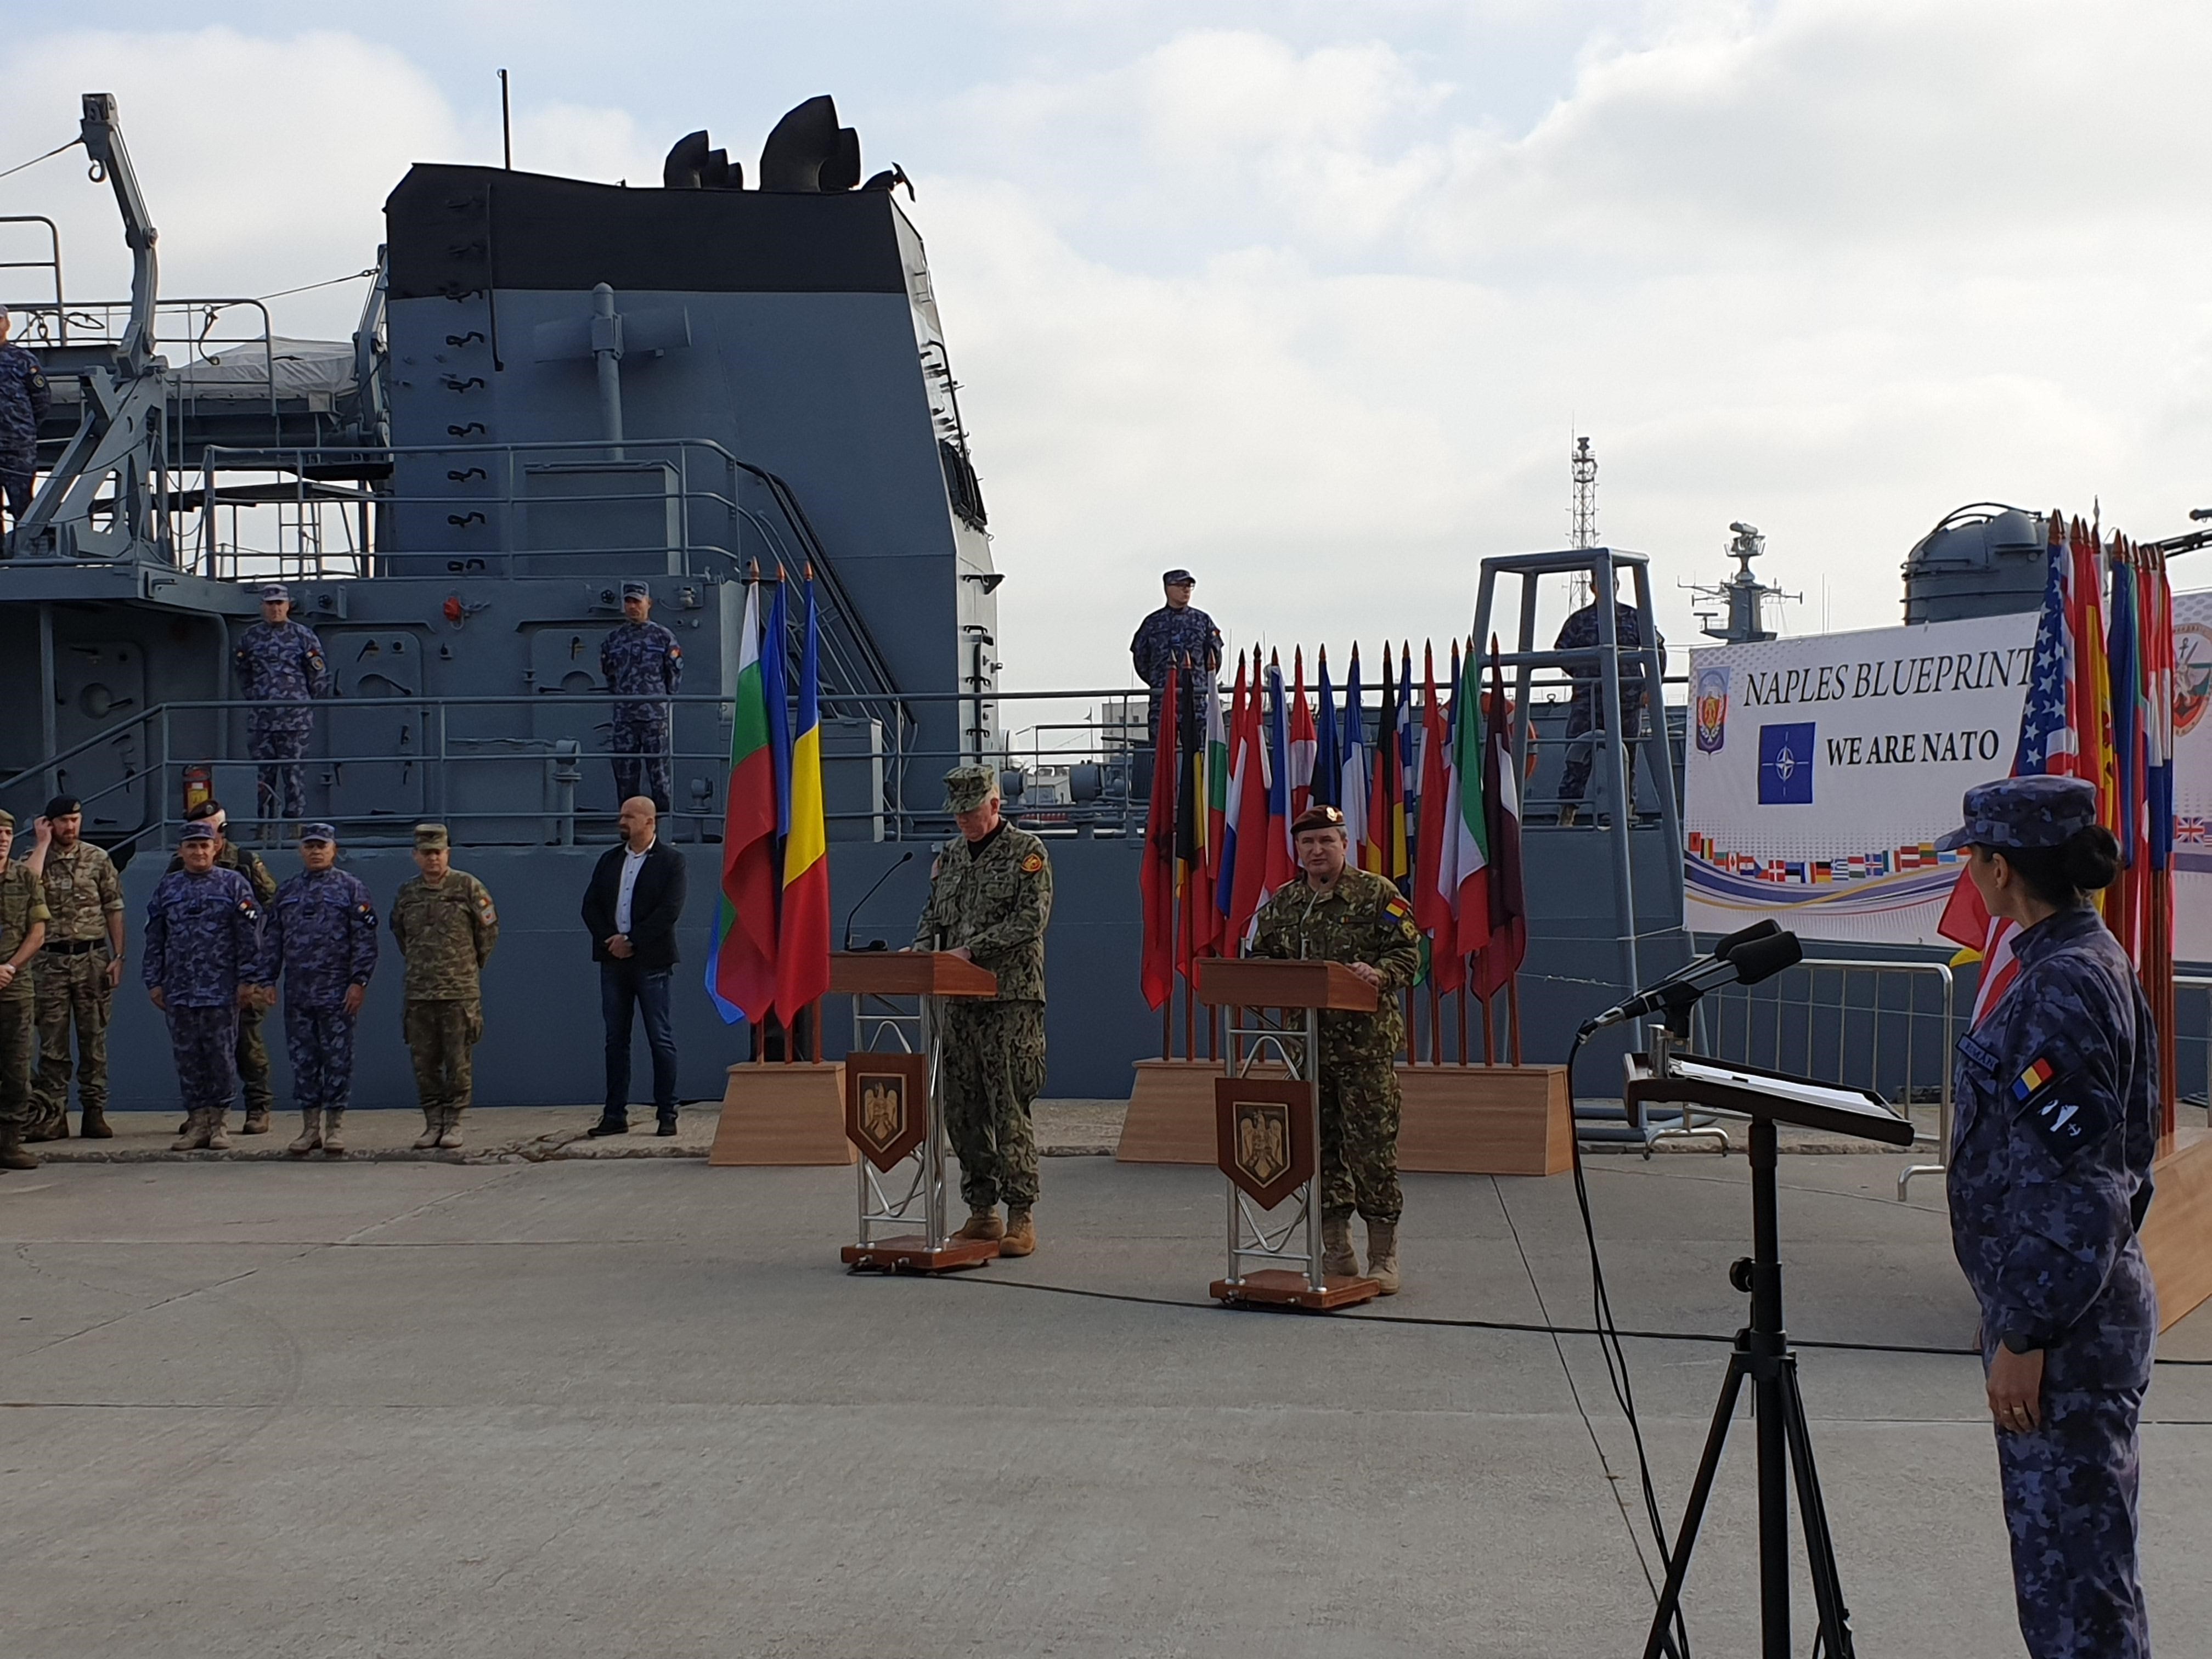 NATO performs 'Naples Blueprint 2019' exercise in Romania and Bulgaria